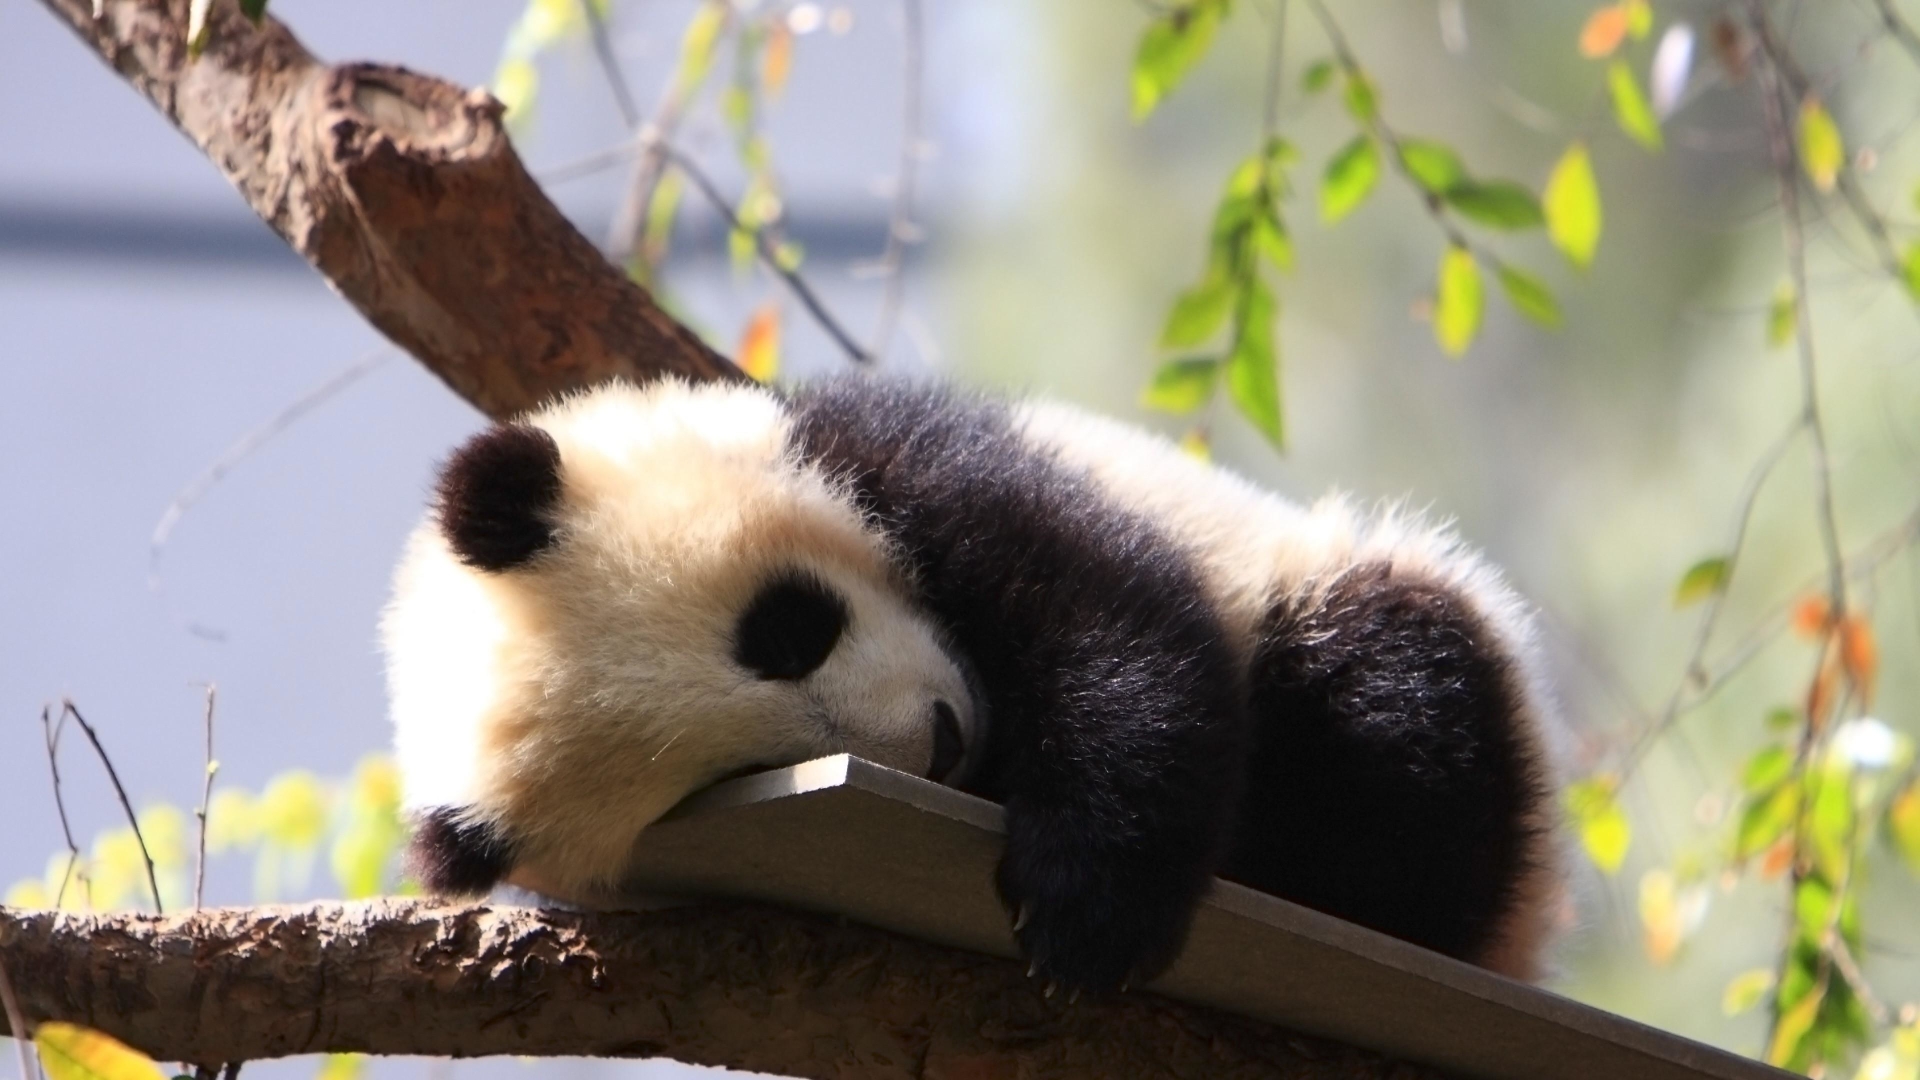 Download mobile wallpaper Animal, Panda, Sleeping, Cute, Baby Animal for free.